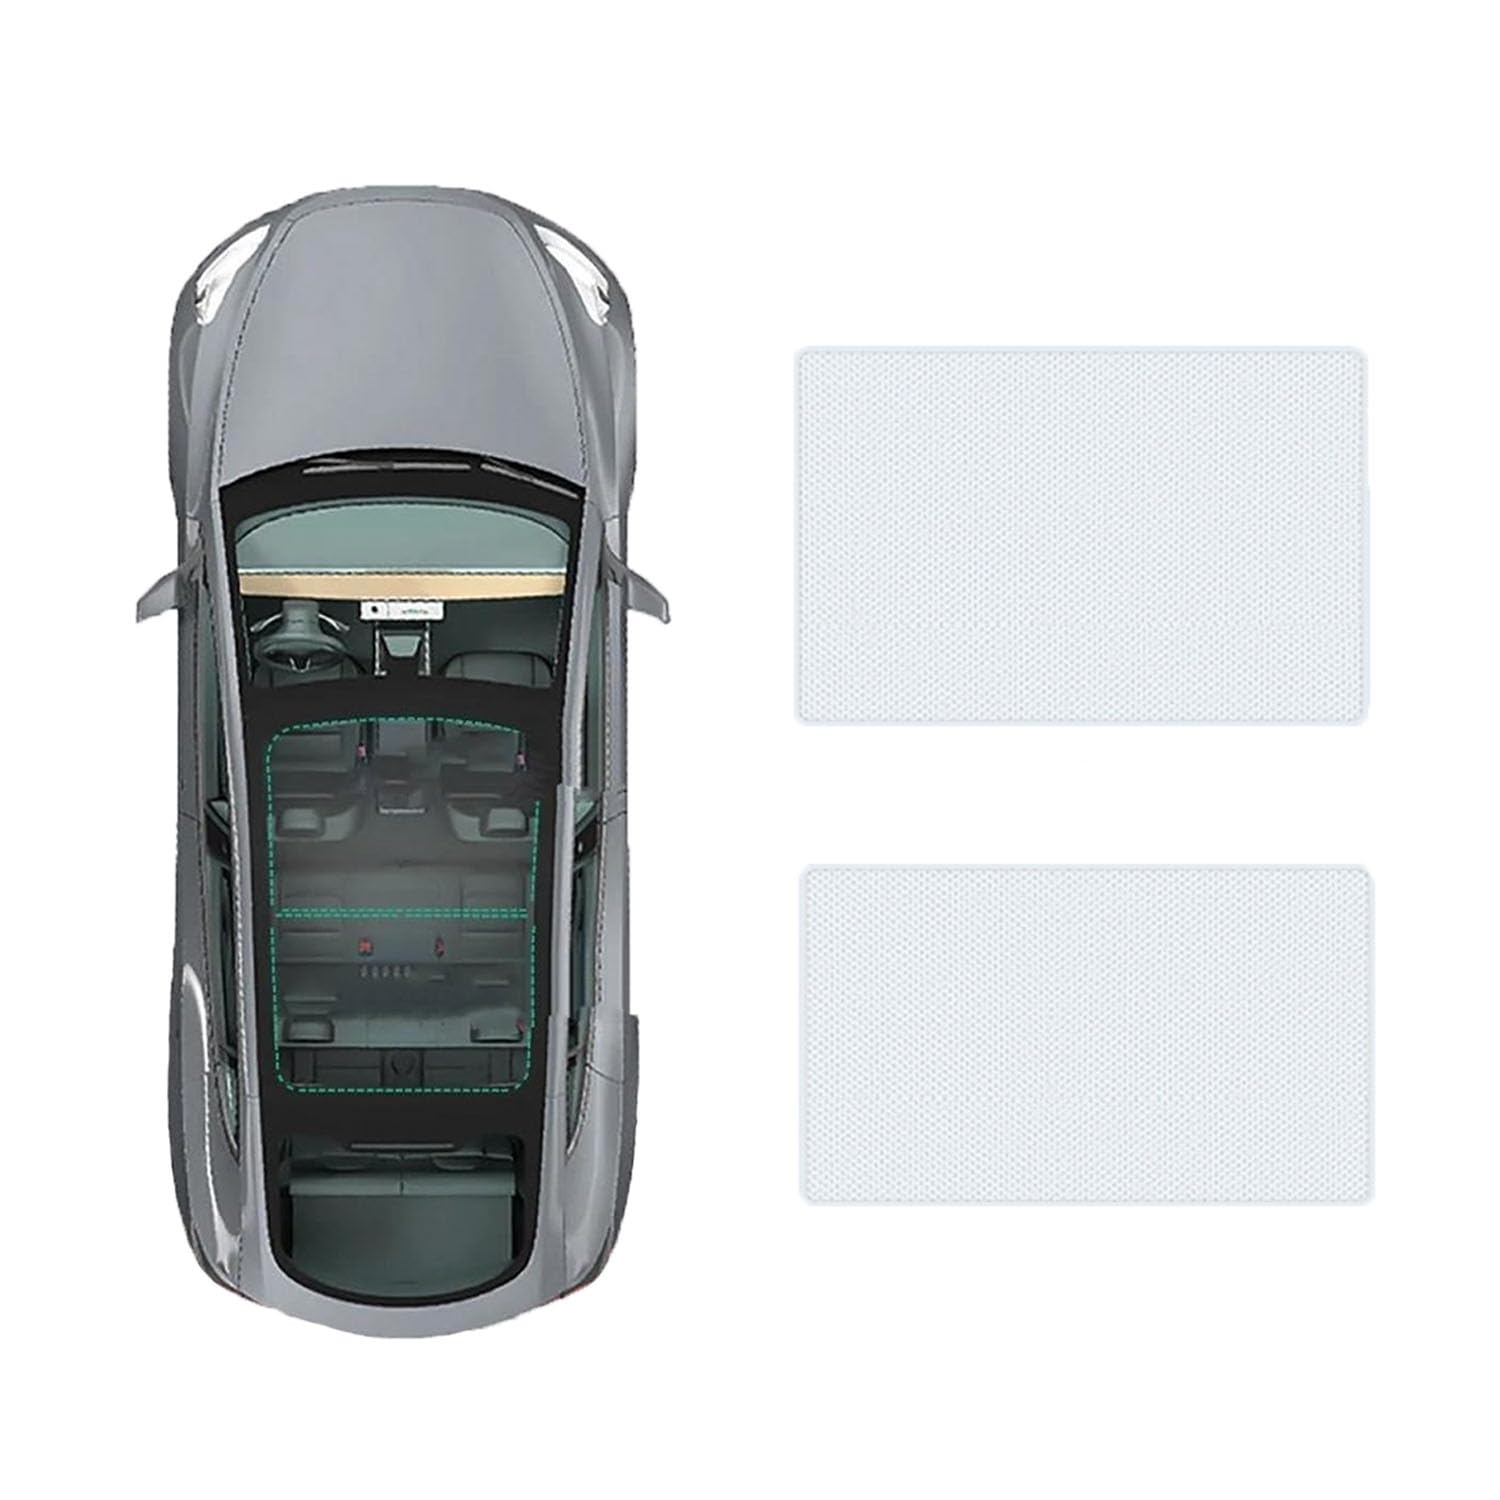 Auto-Schiebedach-Beschattung Für Ford Focus hatch-back 2019-,Auto Schiebedach Sonnenschutz Dachfenster Dach Wärme Isolierung Beschattung Innen,A-Gray white regular Style von LiuROSE